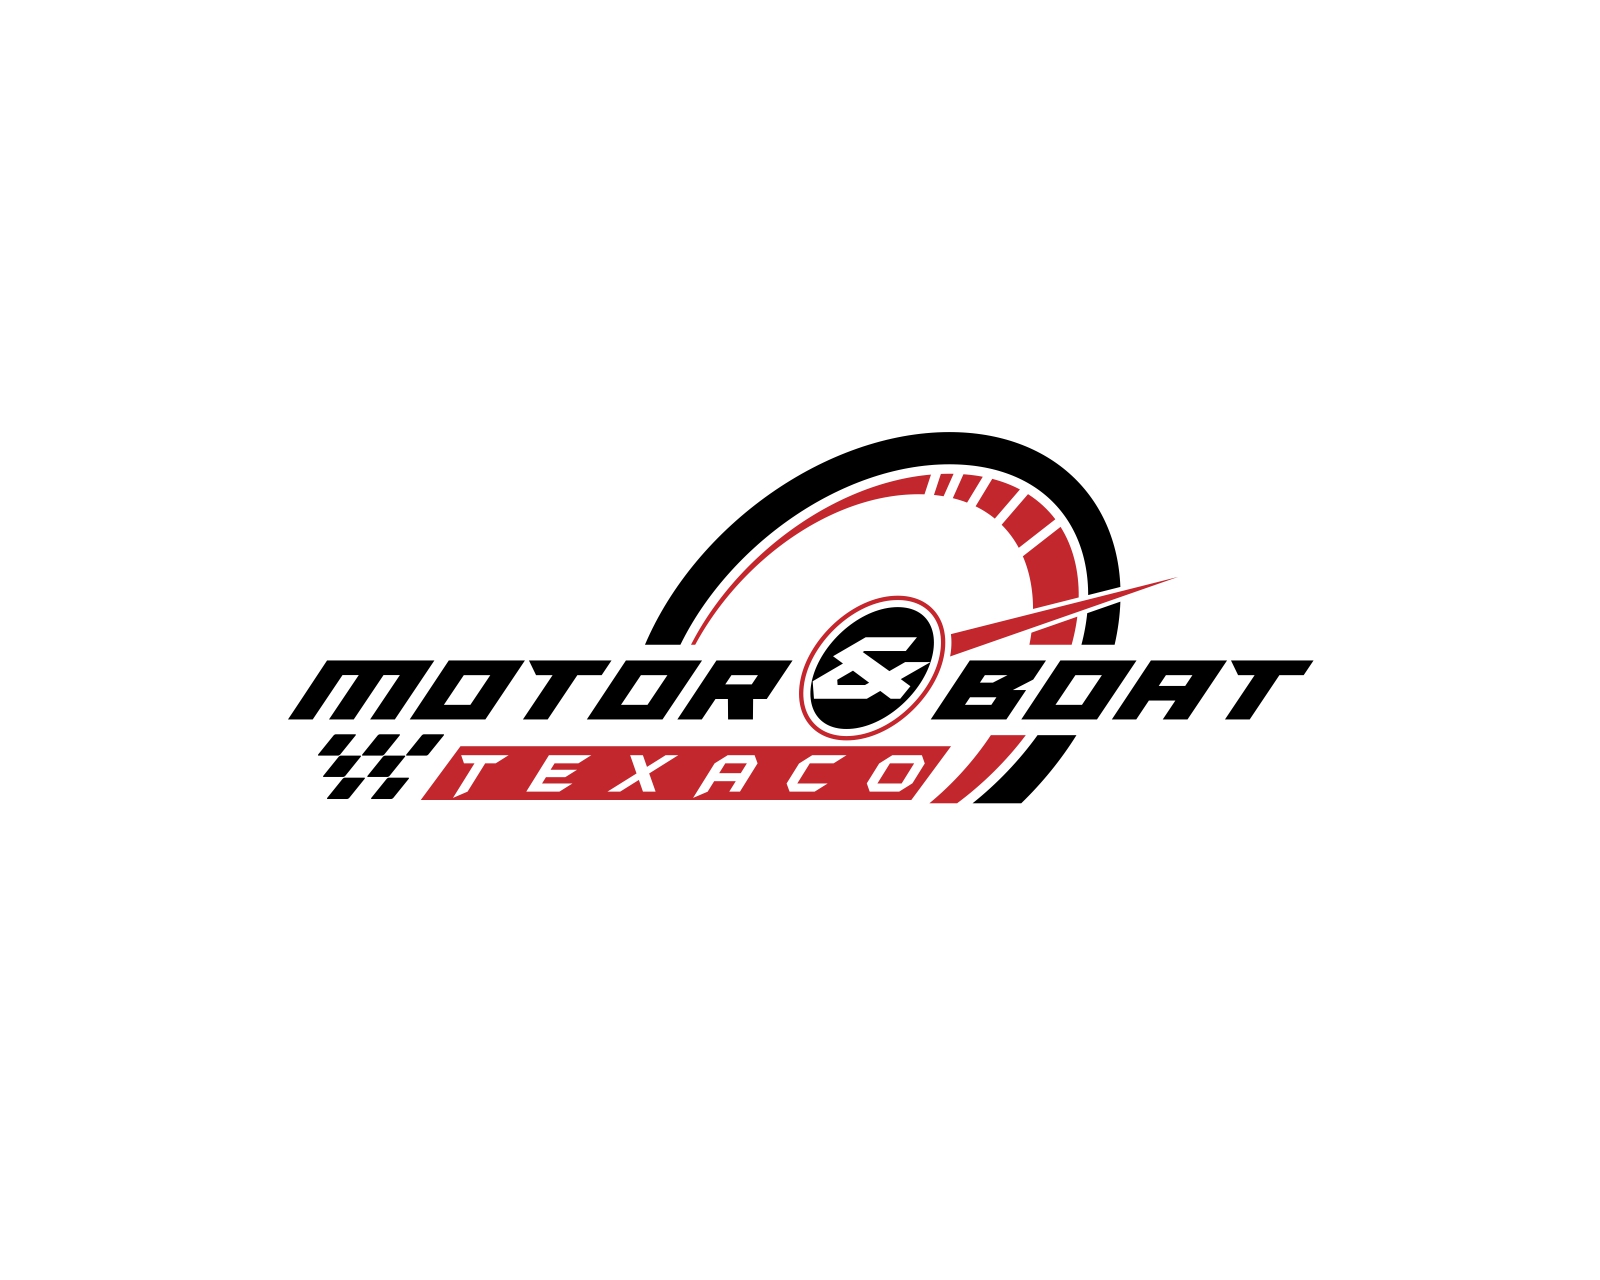 motorboat logo